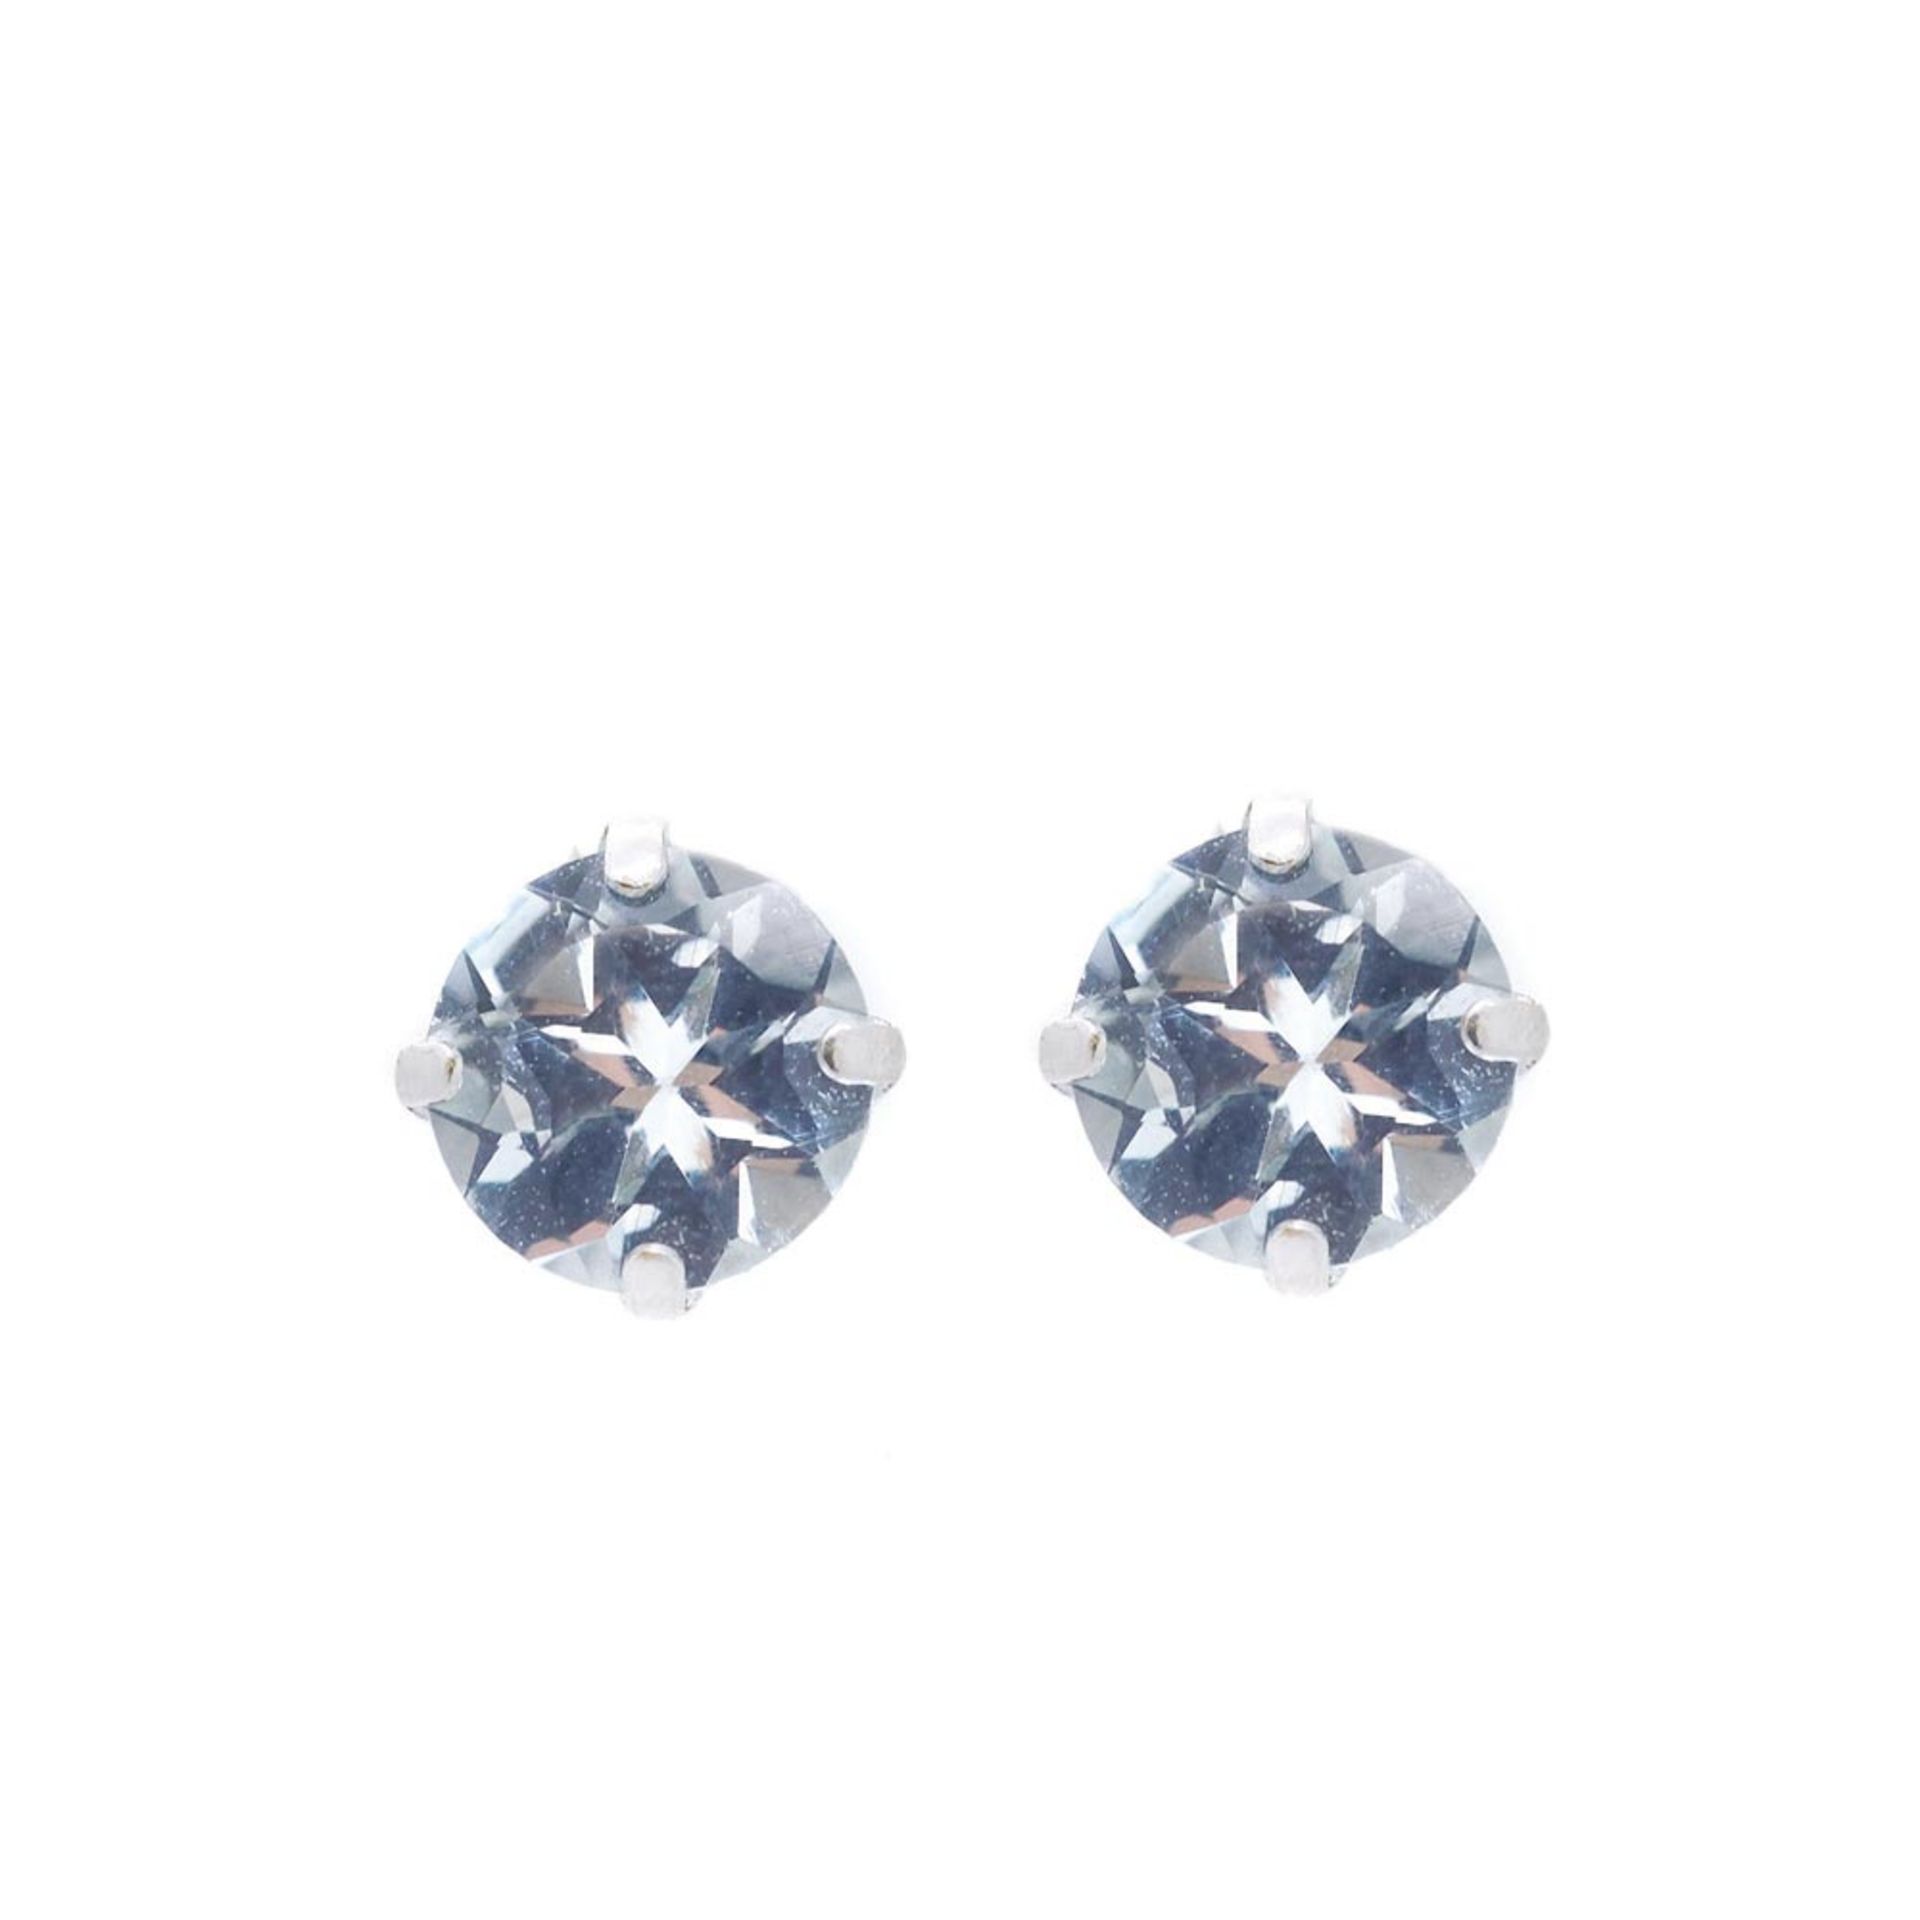 White gold and blue quartz earrings